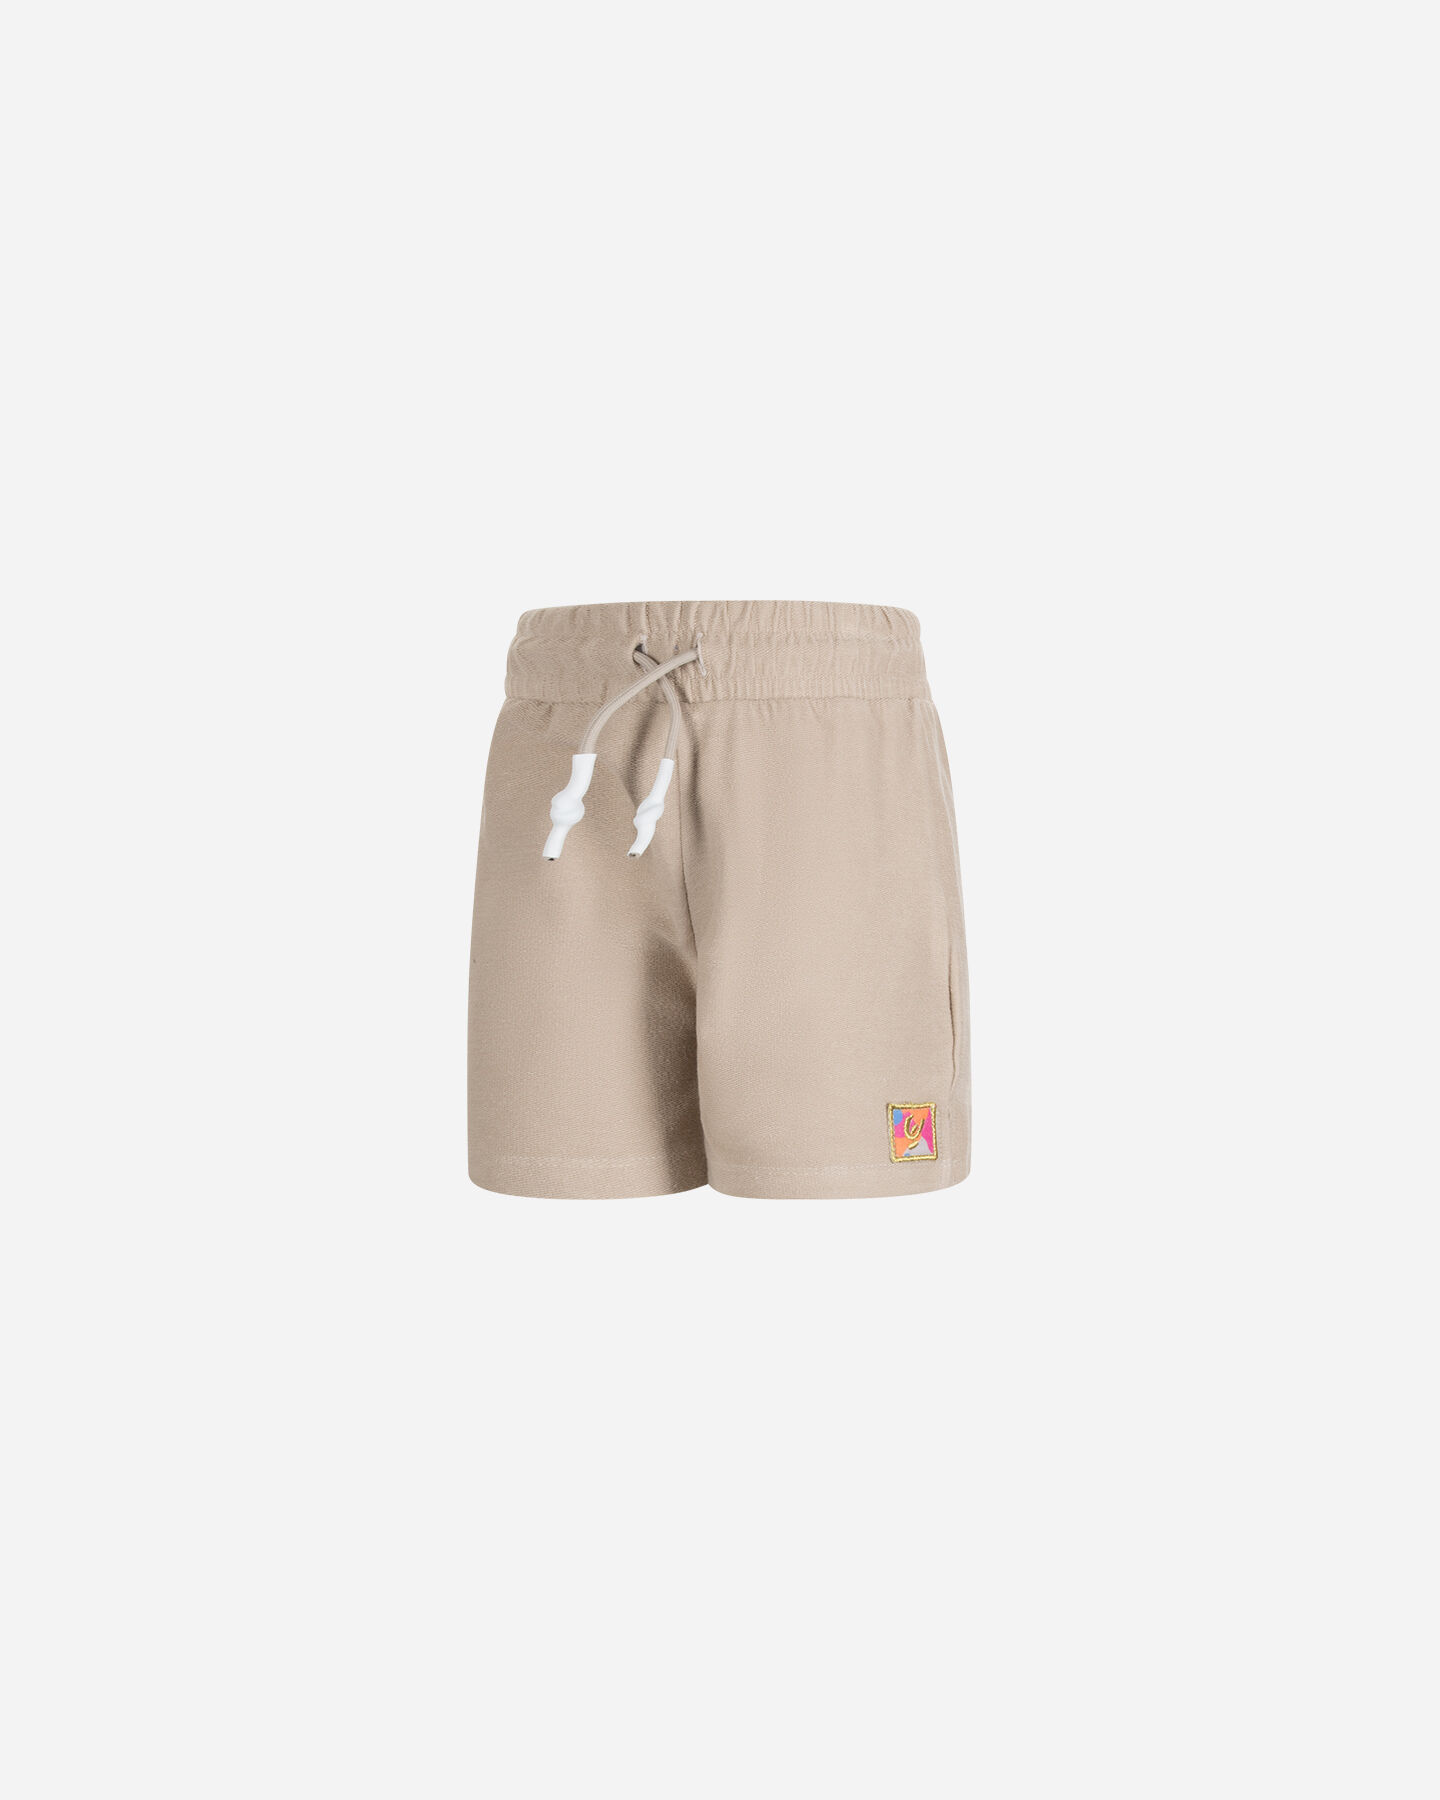  Pantaloncini FREDDY SMALL LOGO JR S4120789|016|14A scatto 0